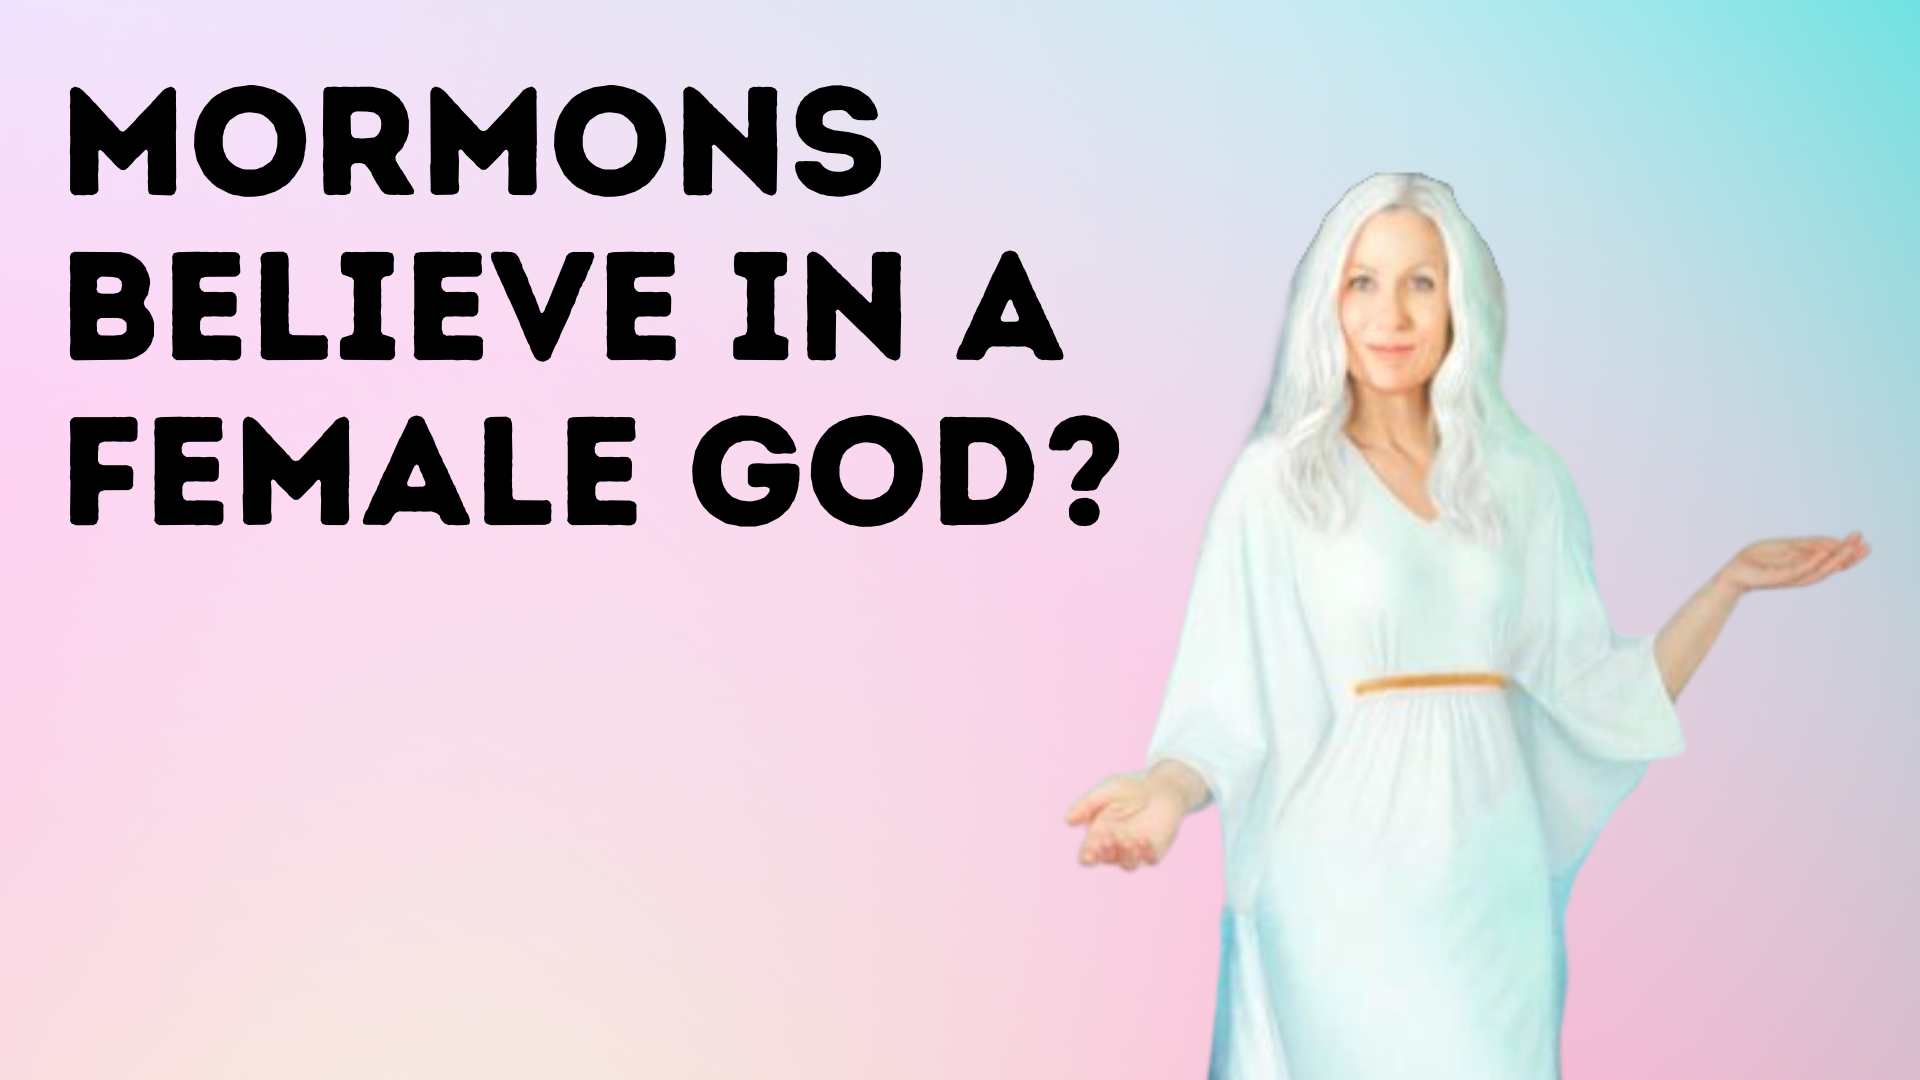 Mormons believe in a female God?